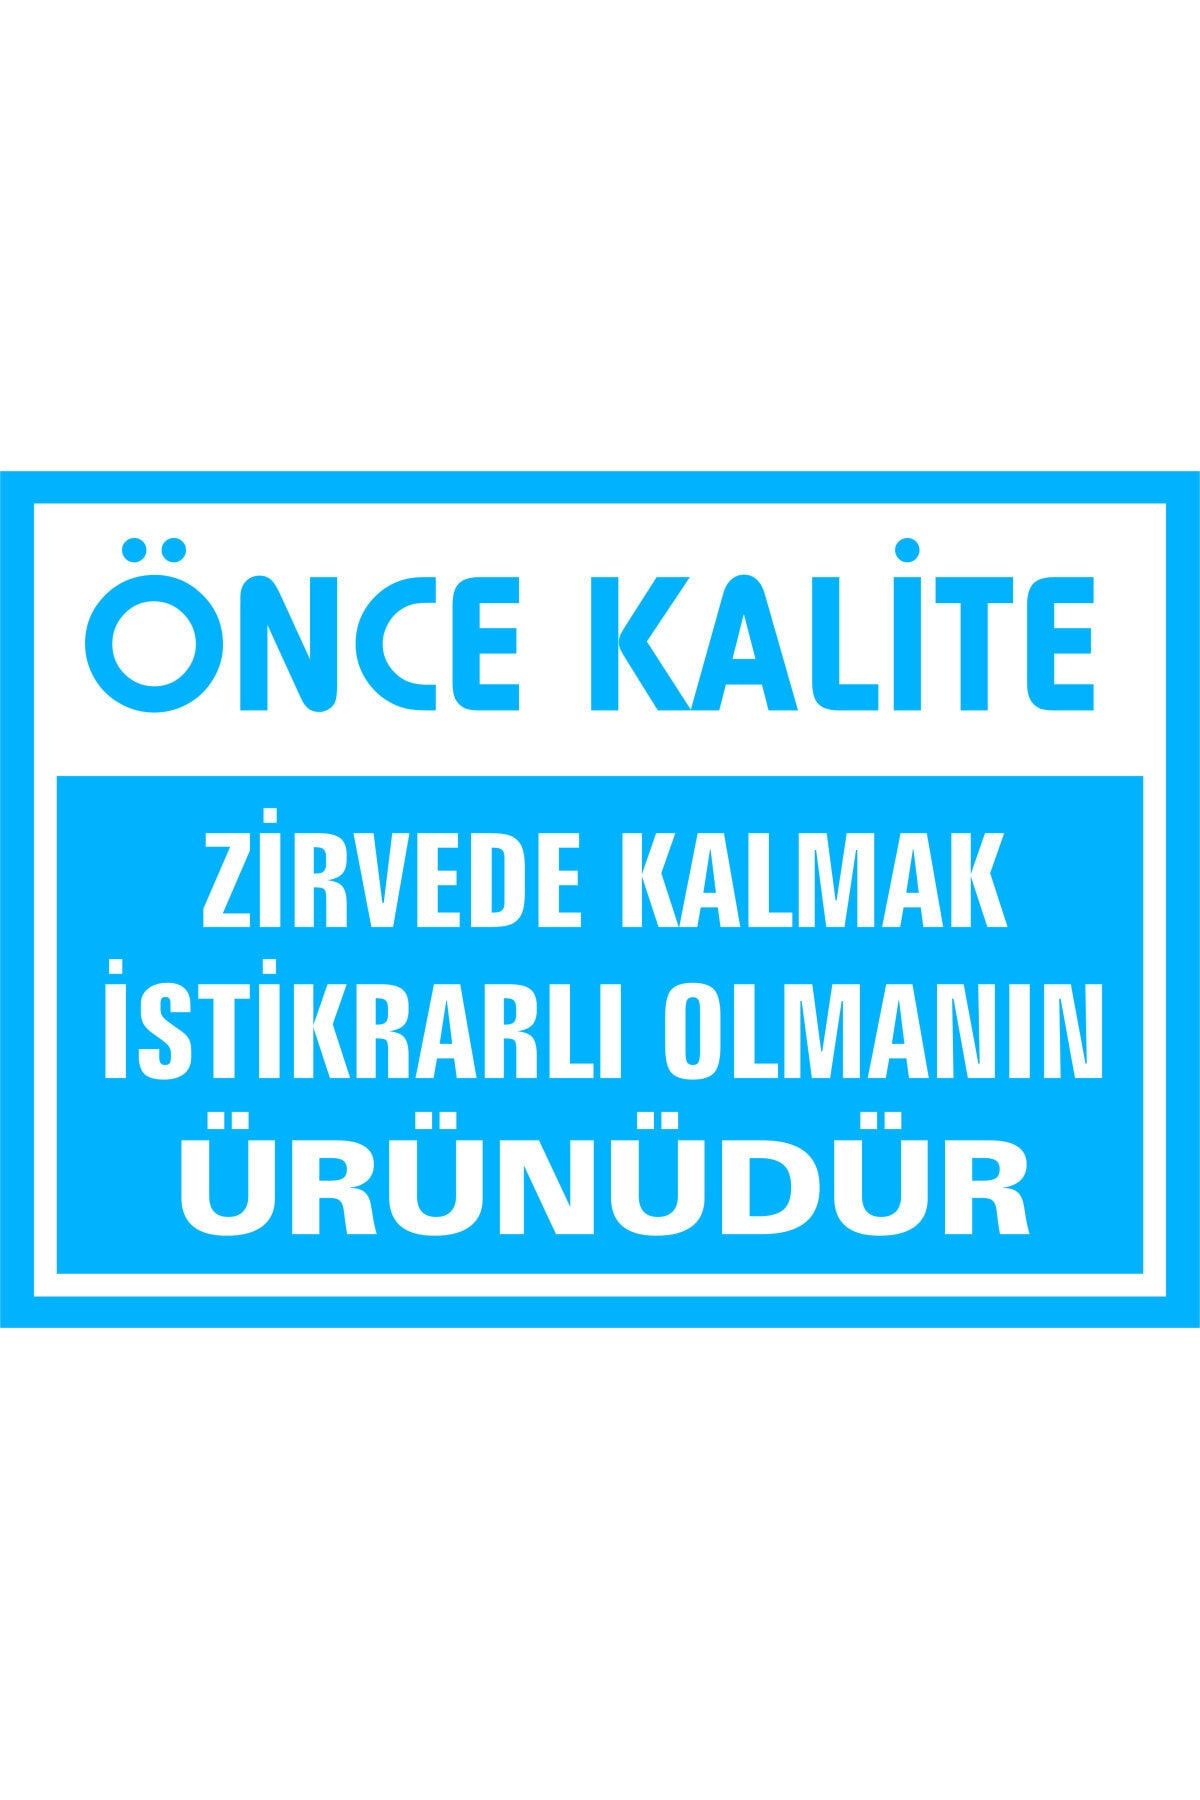 İzmir Serigrafi Önce Kalite Zirvede Kalmak Istikrarlı Olmanın Ürünüdür 3mm Dekota Uyarı Levhası 35 X 50 Cm